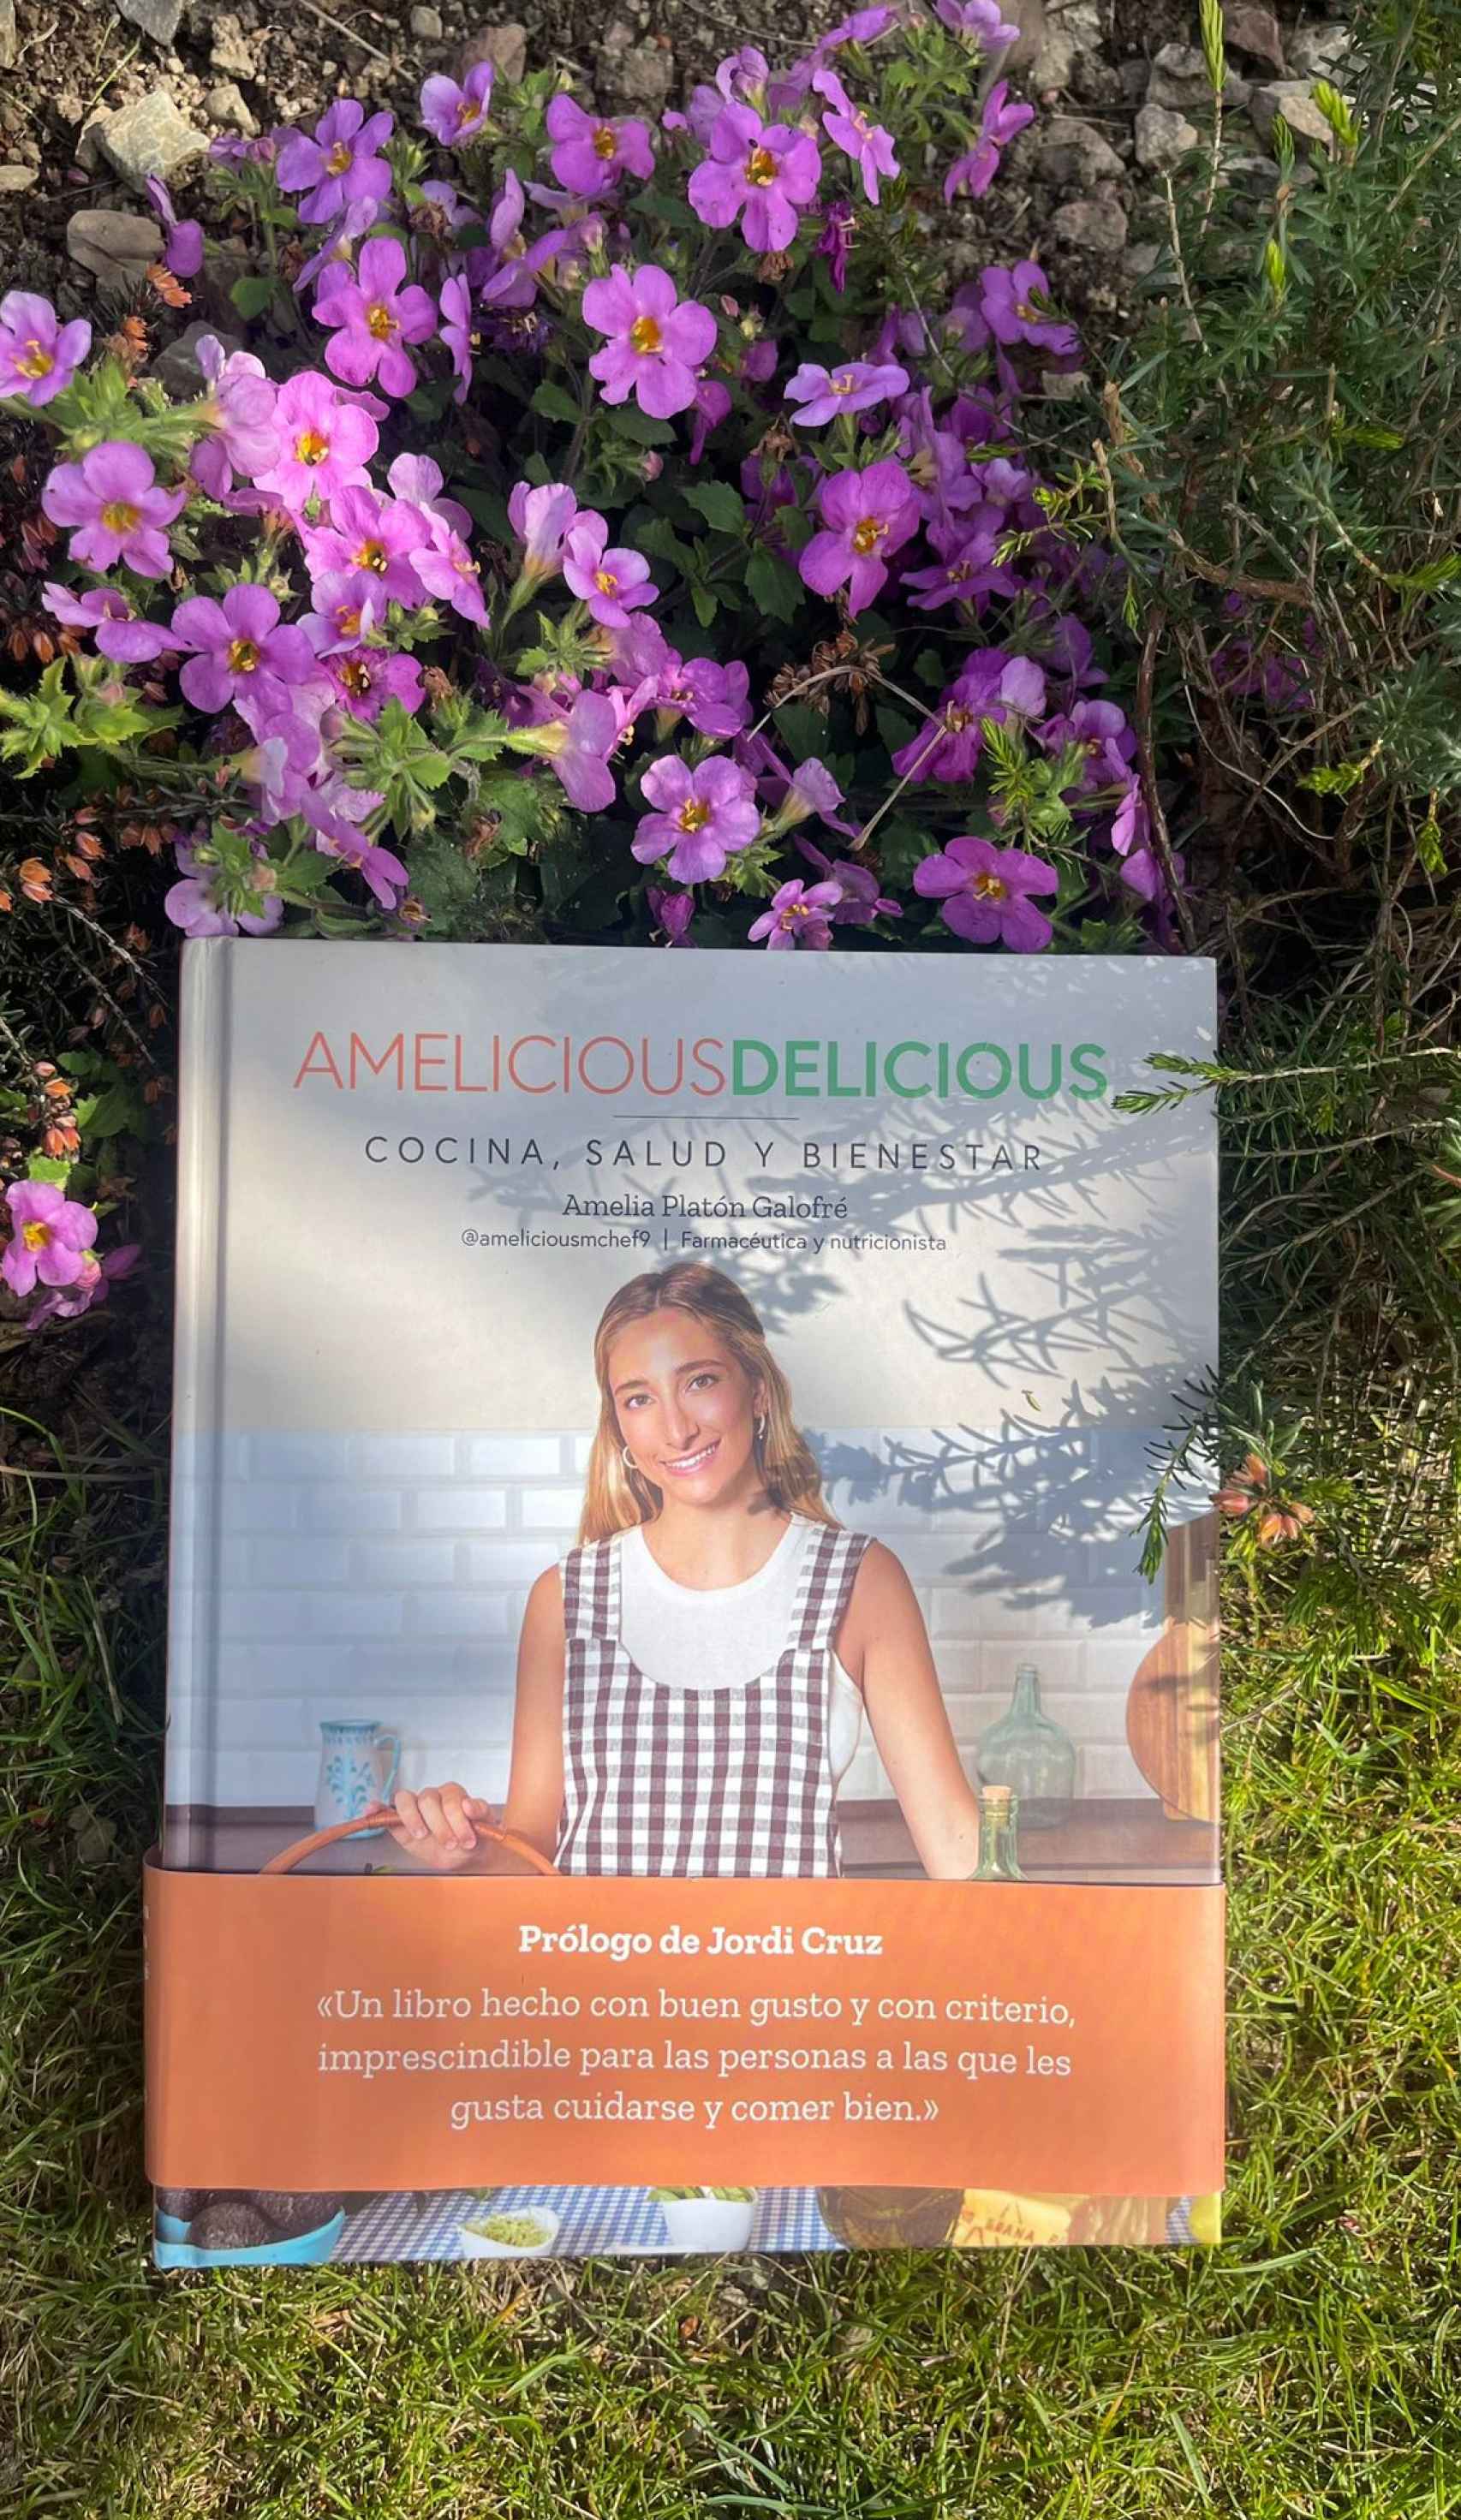 Amelicious Delicious: cocina, salud y bienestar.